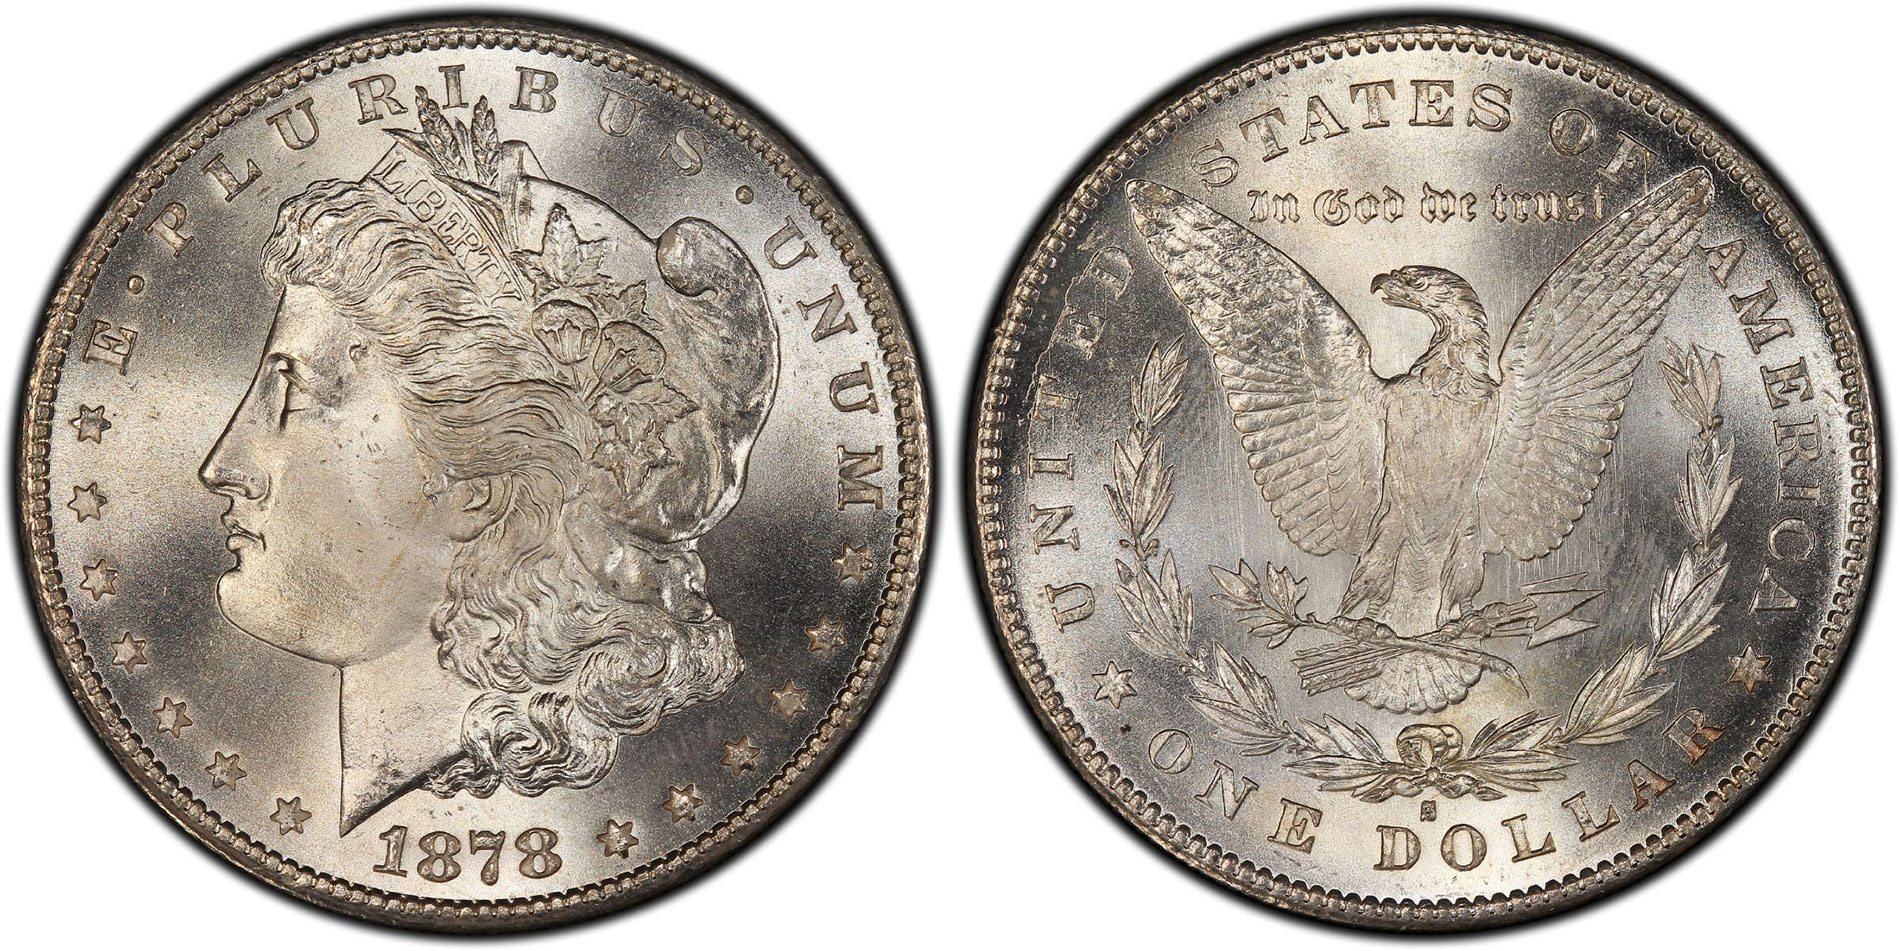 Precious Metal & Rare Coin Market News